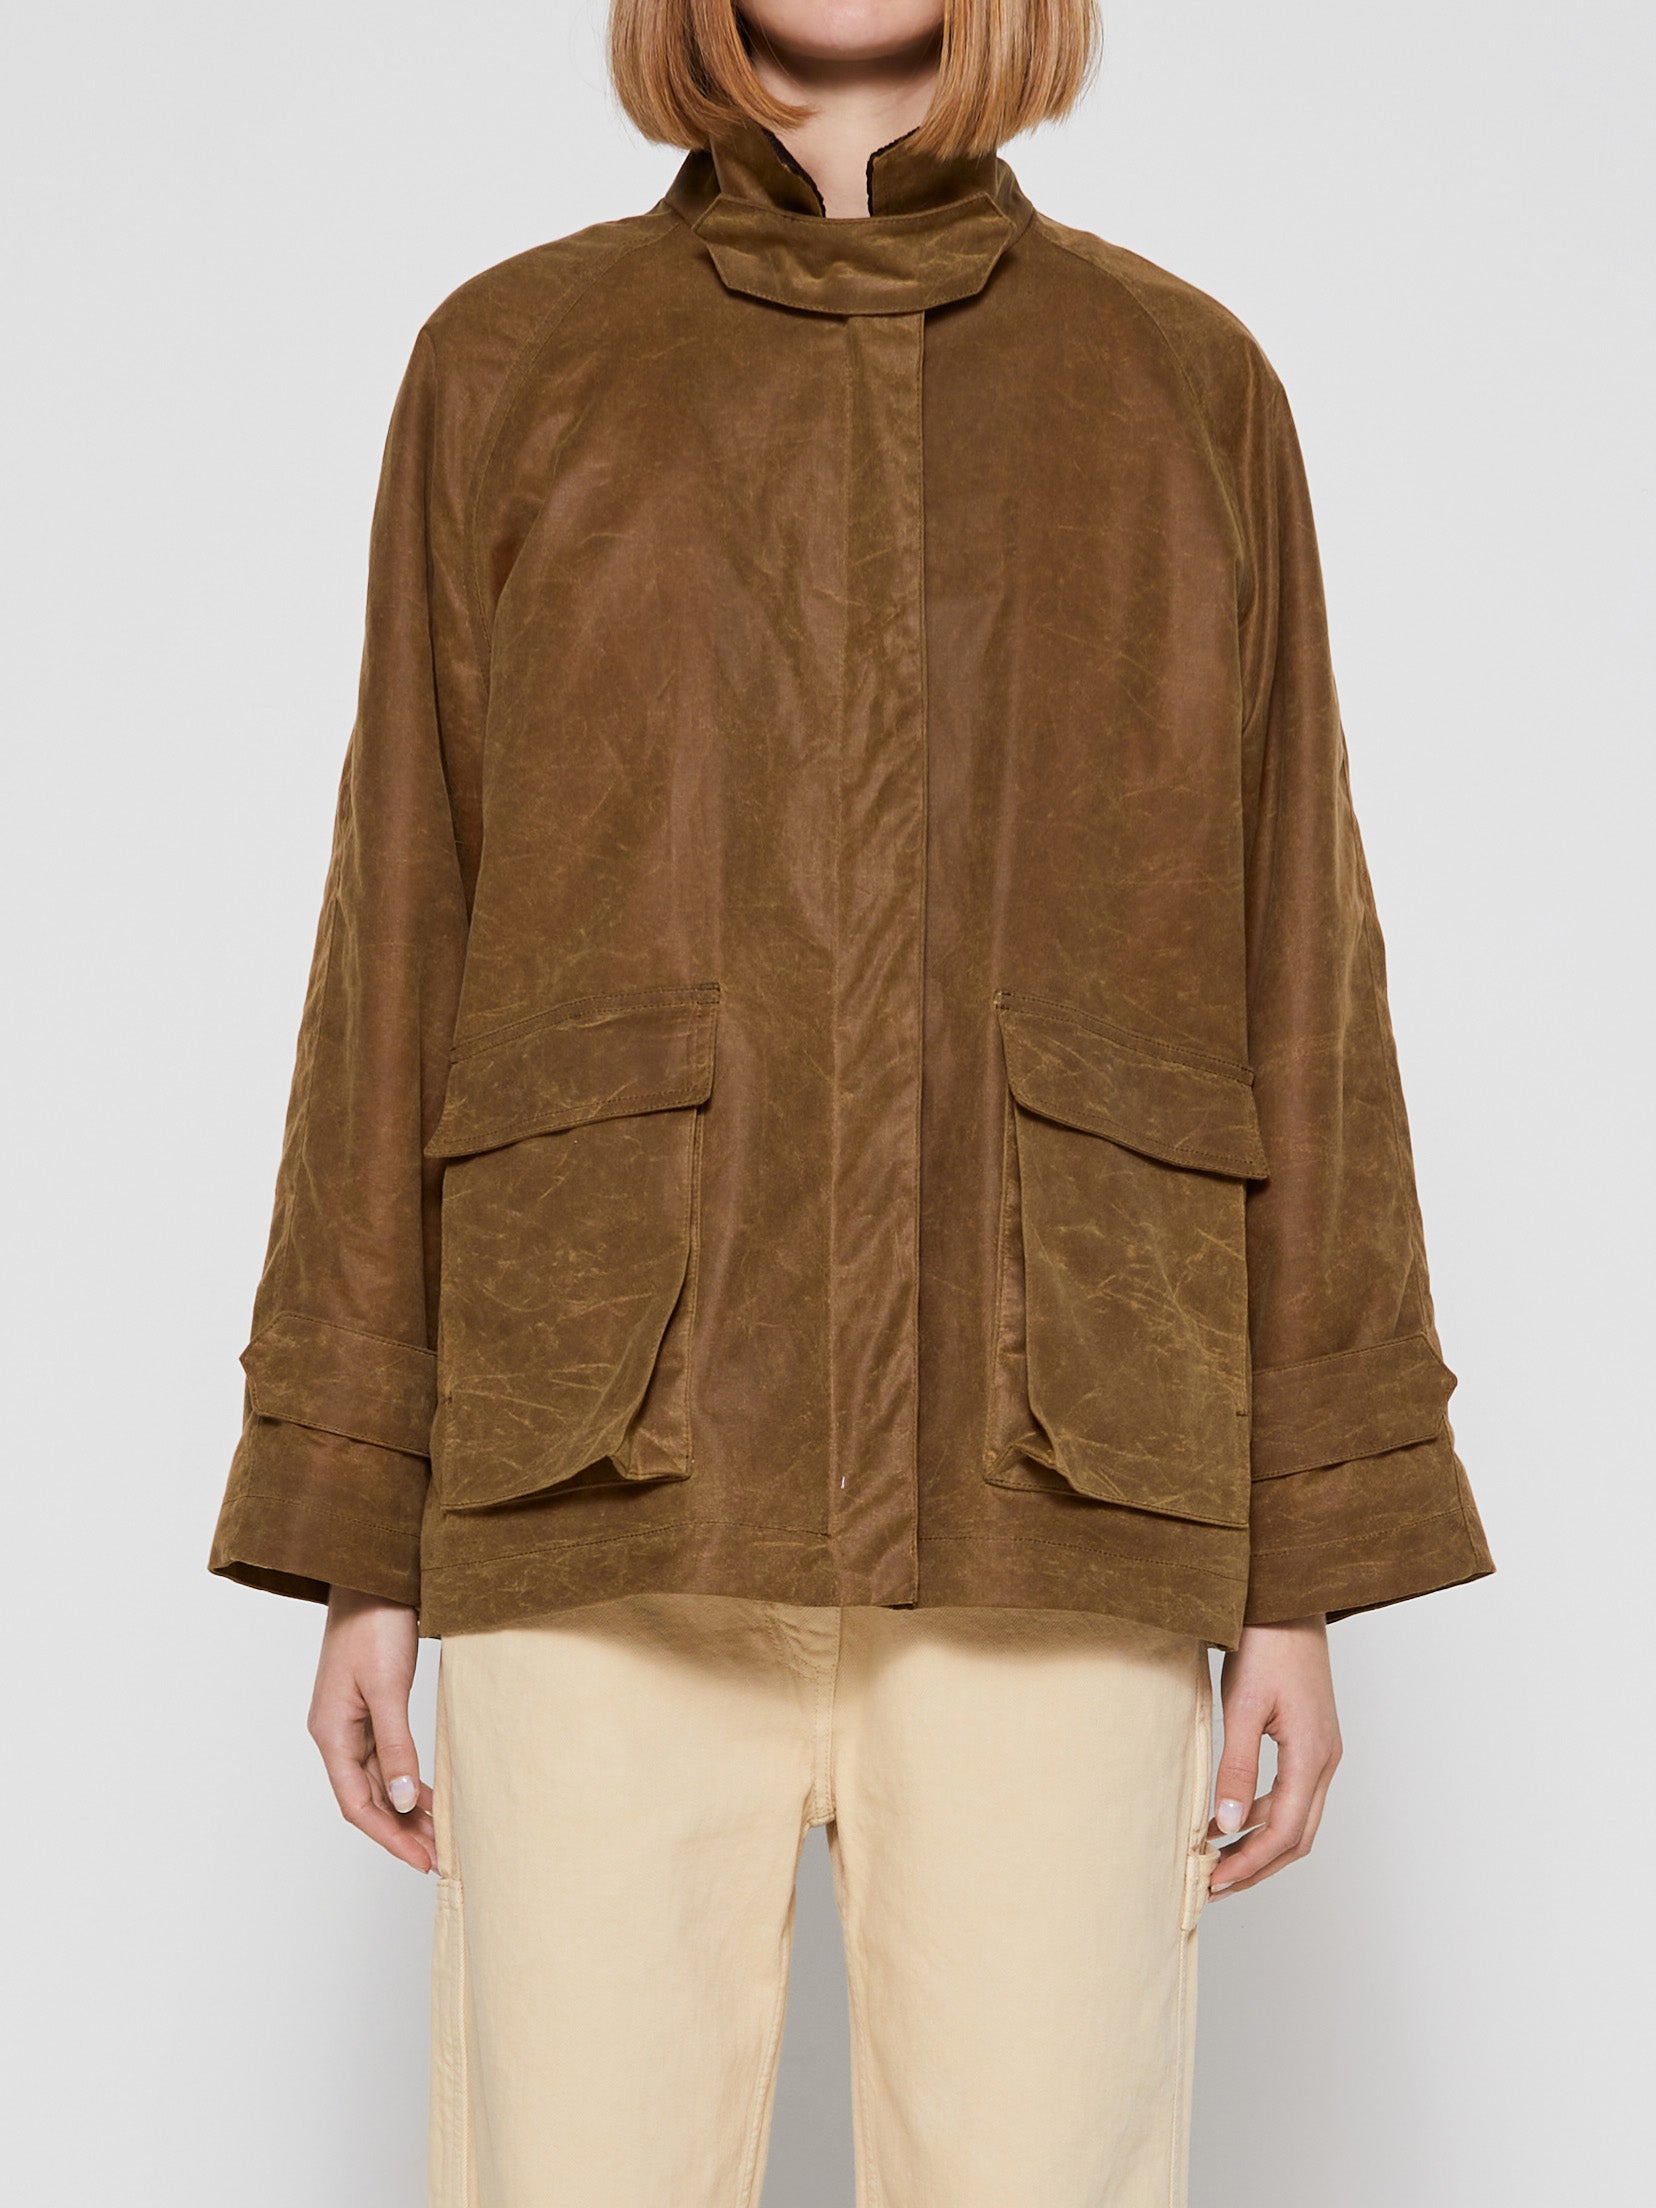 Coats & Jackets – Tag – stoy